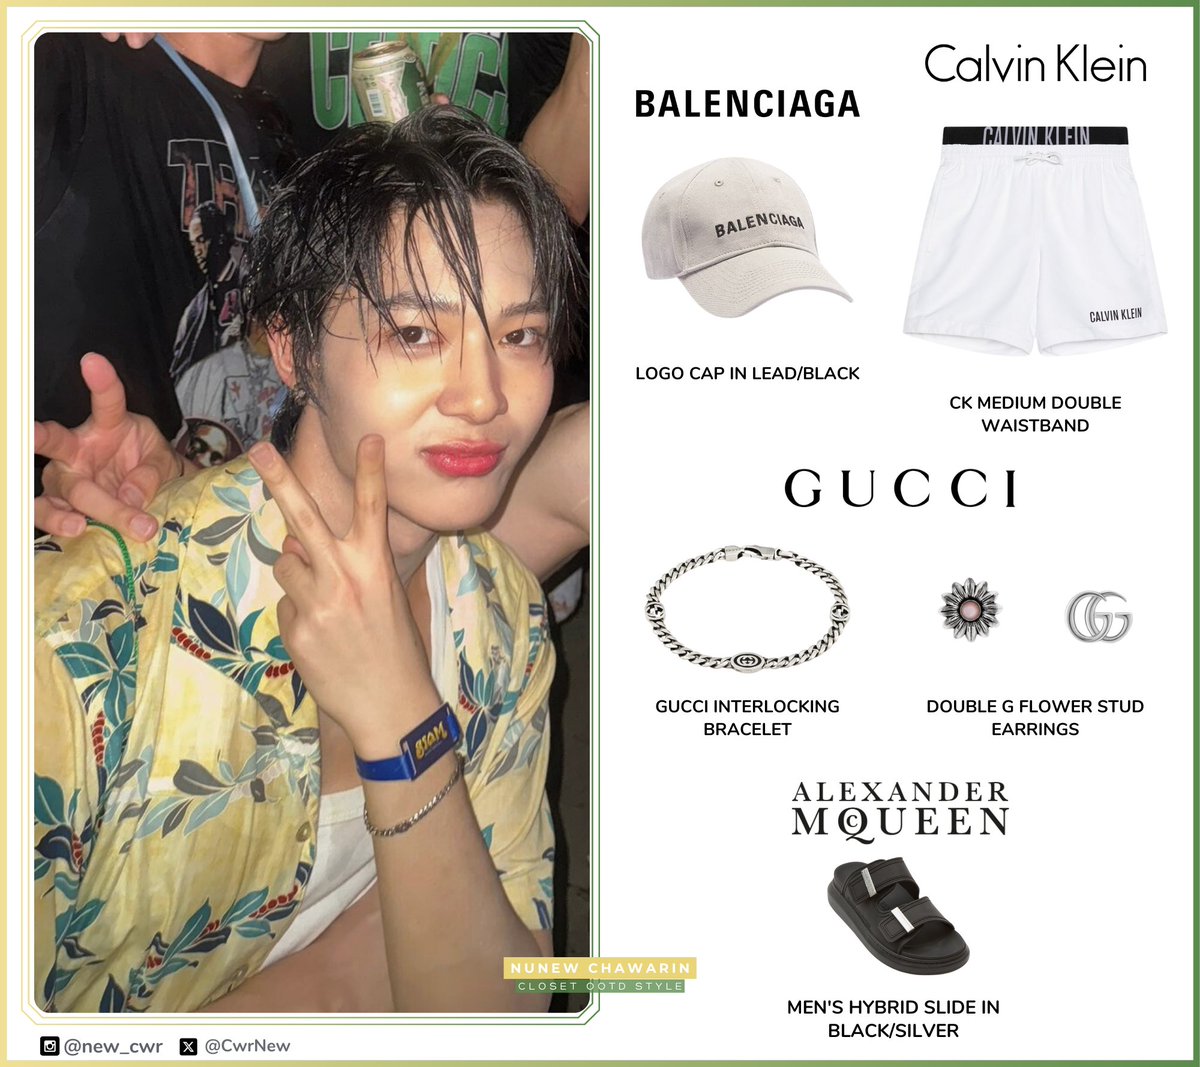 UPDATE!!! Songkran 💦🔫
[ #NuNewOOTD #NuNew_Style] @CwrNew

#Balenciaga
LOGO CAP IN LEAD
@CalvinKlein
CK MEDIUM DOUBLE WB
@gucci
GUCCI INTERLOCKING BRACELET
DOUBLE G FLOWER STUD EARRINGS
@McQueen
MEN'S HYBRID SLIDE

#NuNew #NanaNu #Balenciaga #CalvinKlein #Gucci #AlexanderMcQueen